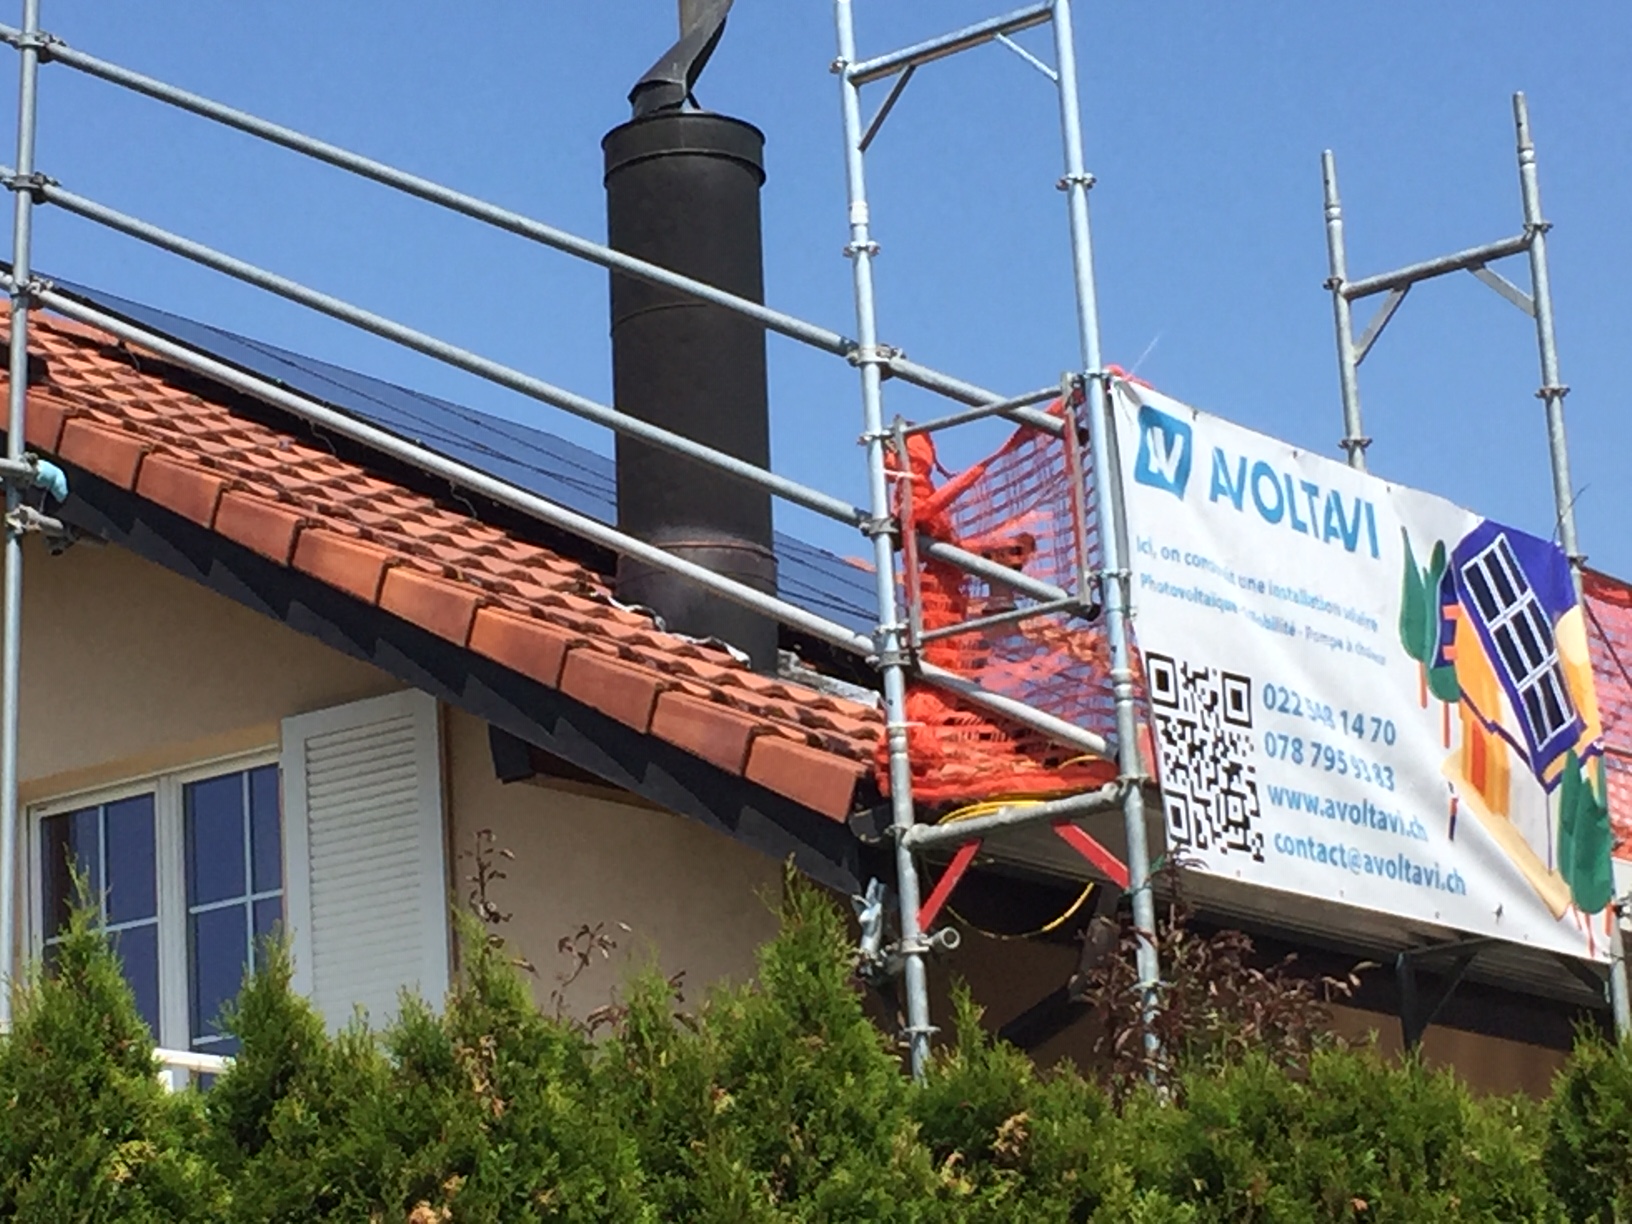 Mise en sécurité du chantier pour l'installation des panneaux photovoltaïques